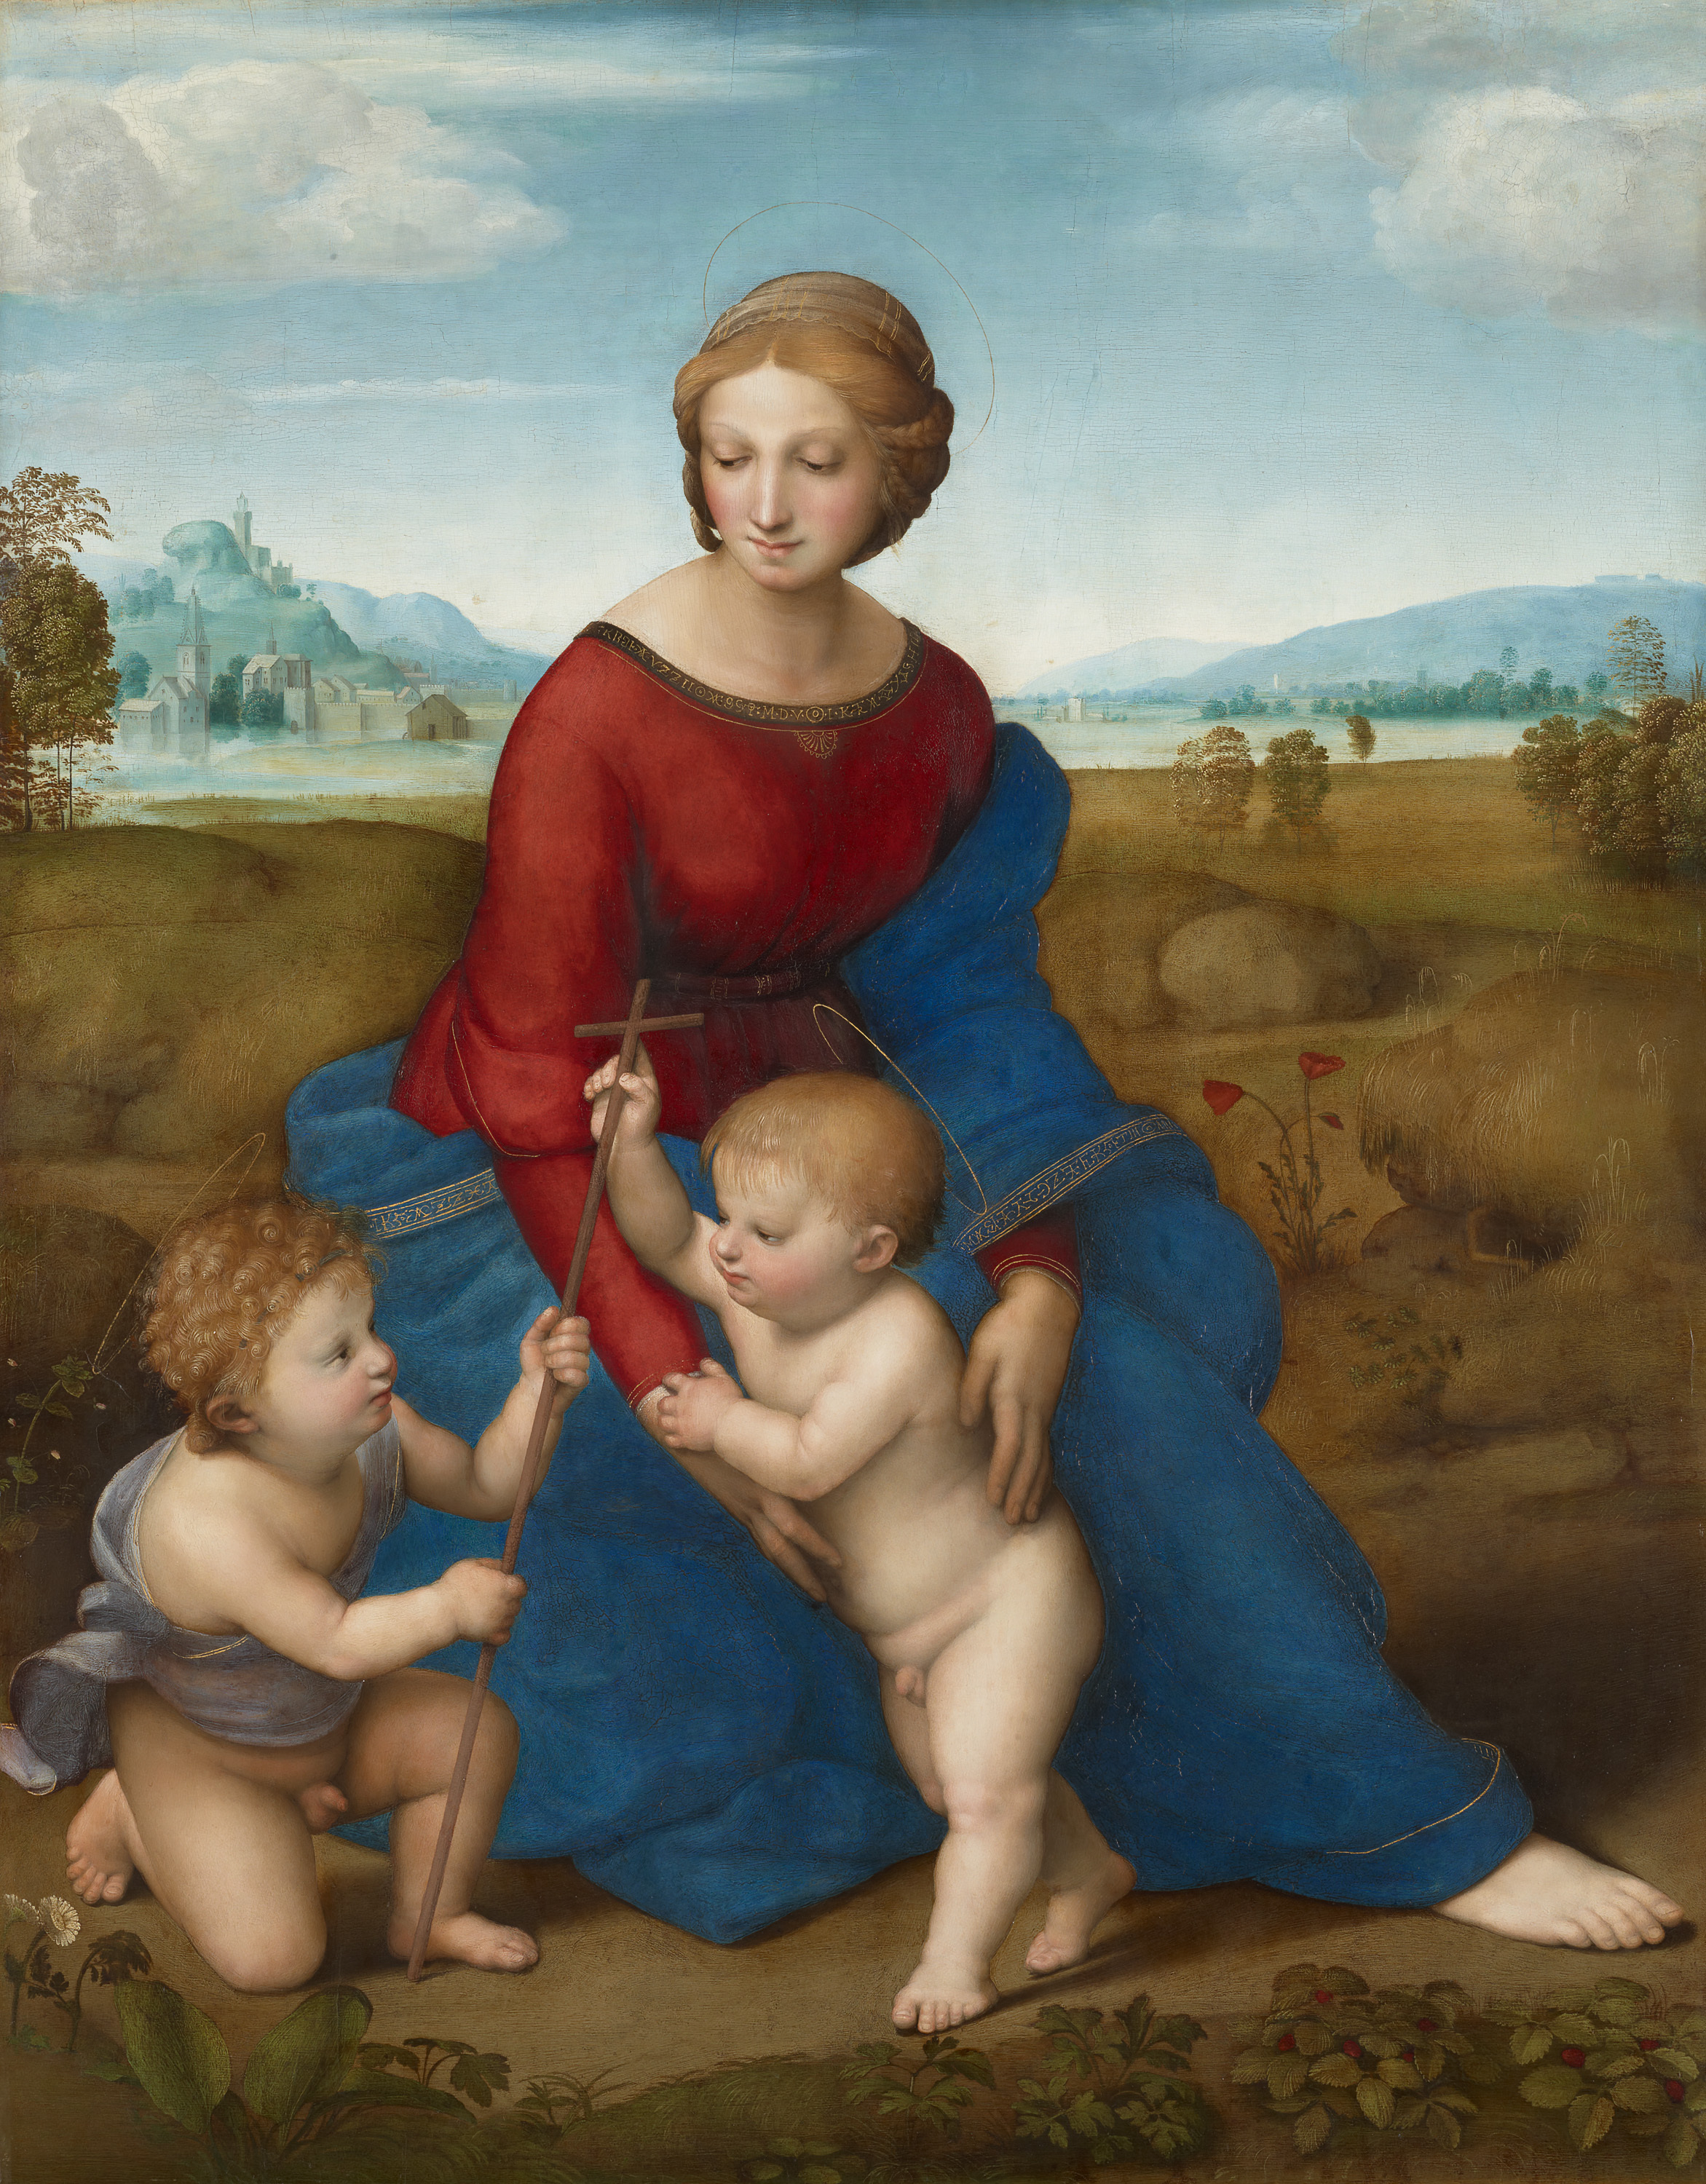 Madonna im Grünen by Raffael Santi - 1505/1506 - 88,5 x 113 cm Kunsthistorisches Museum